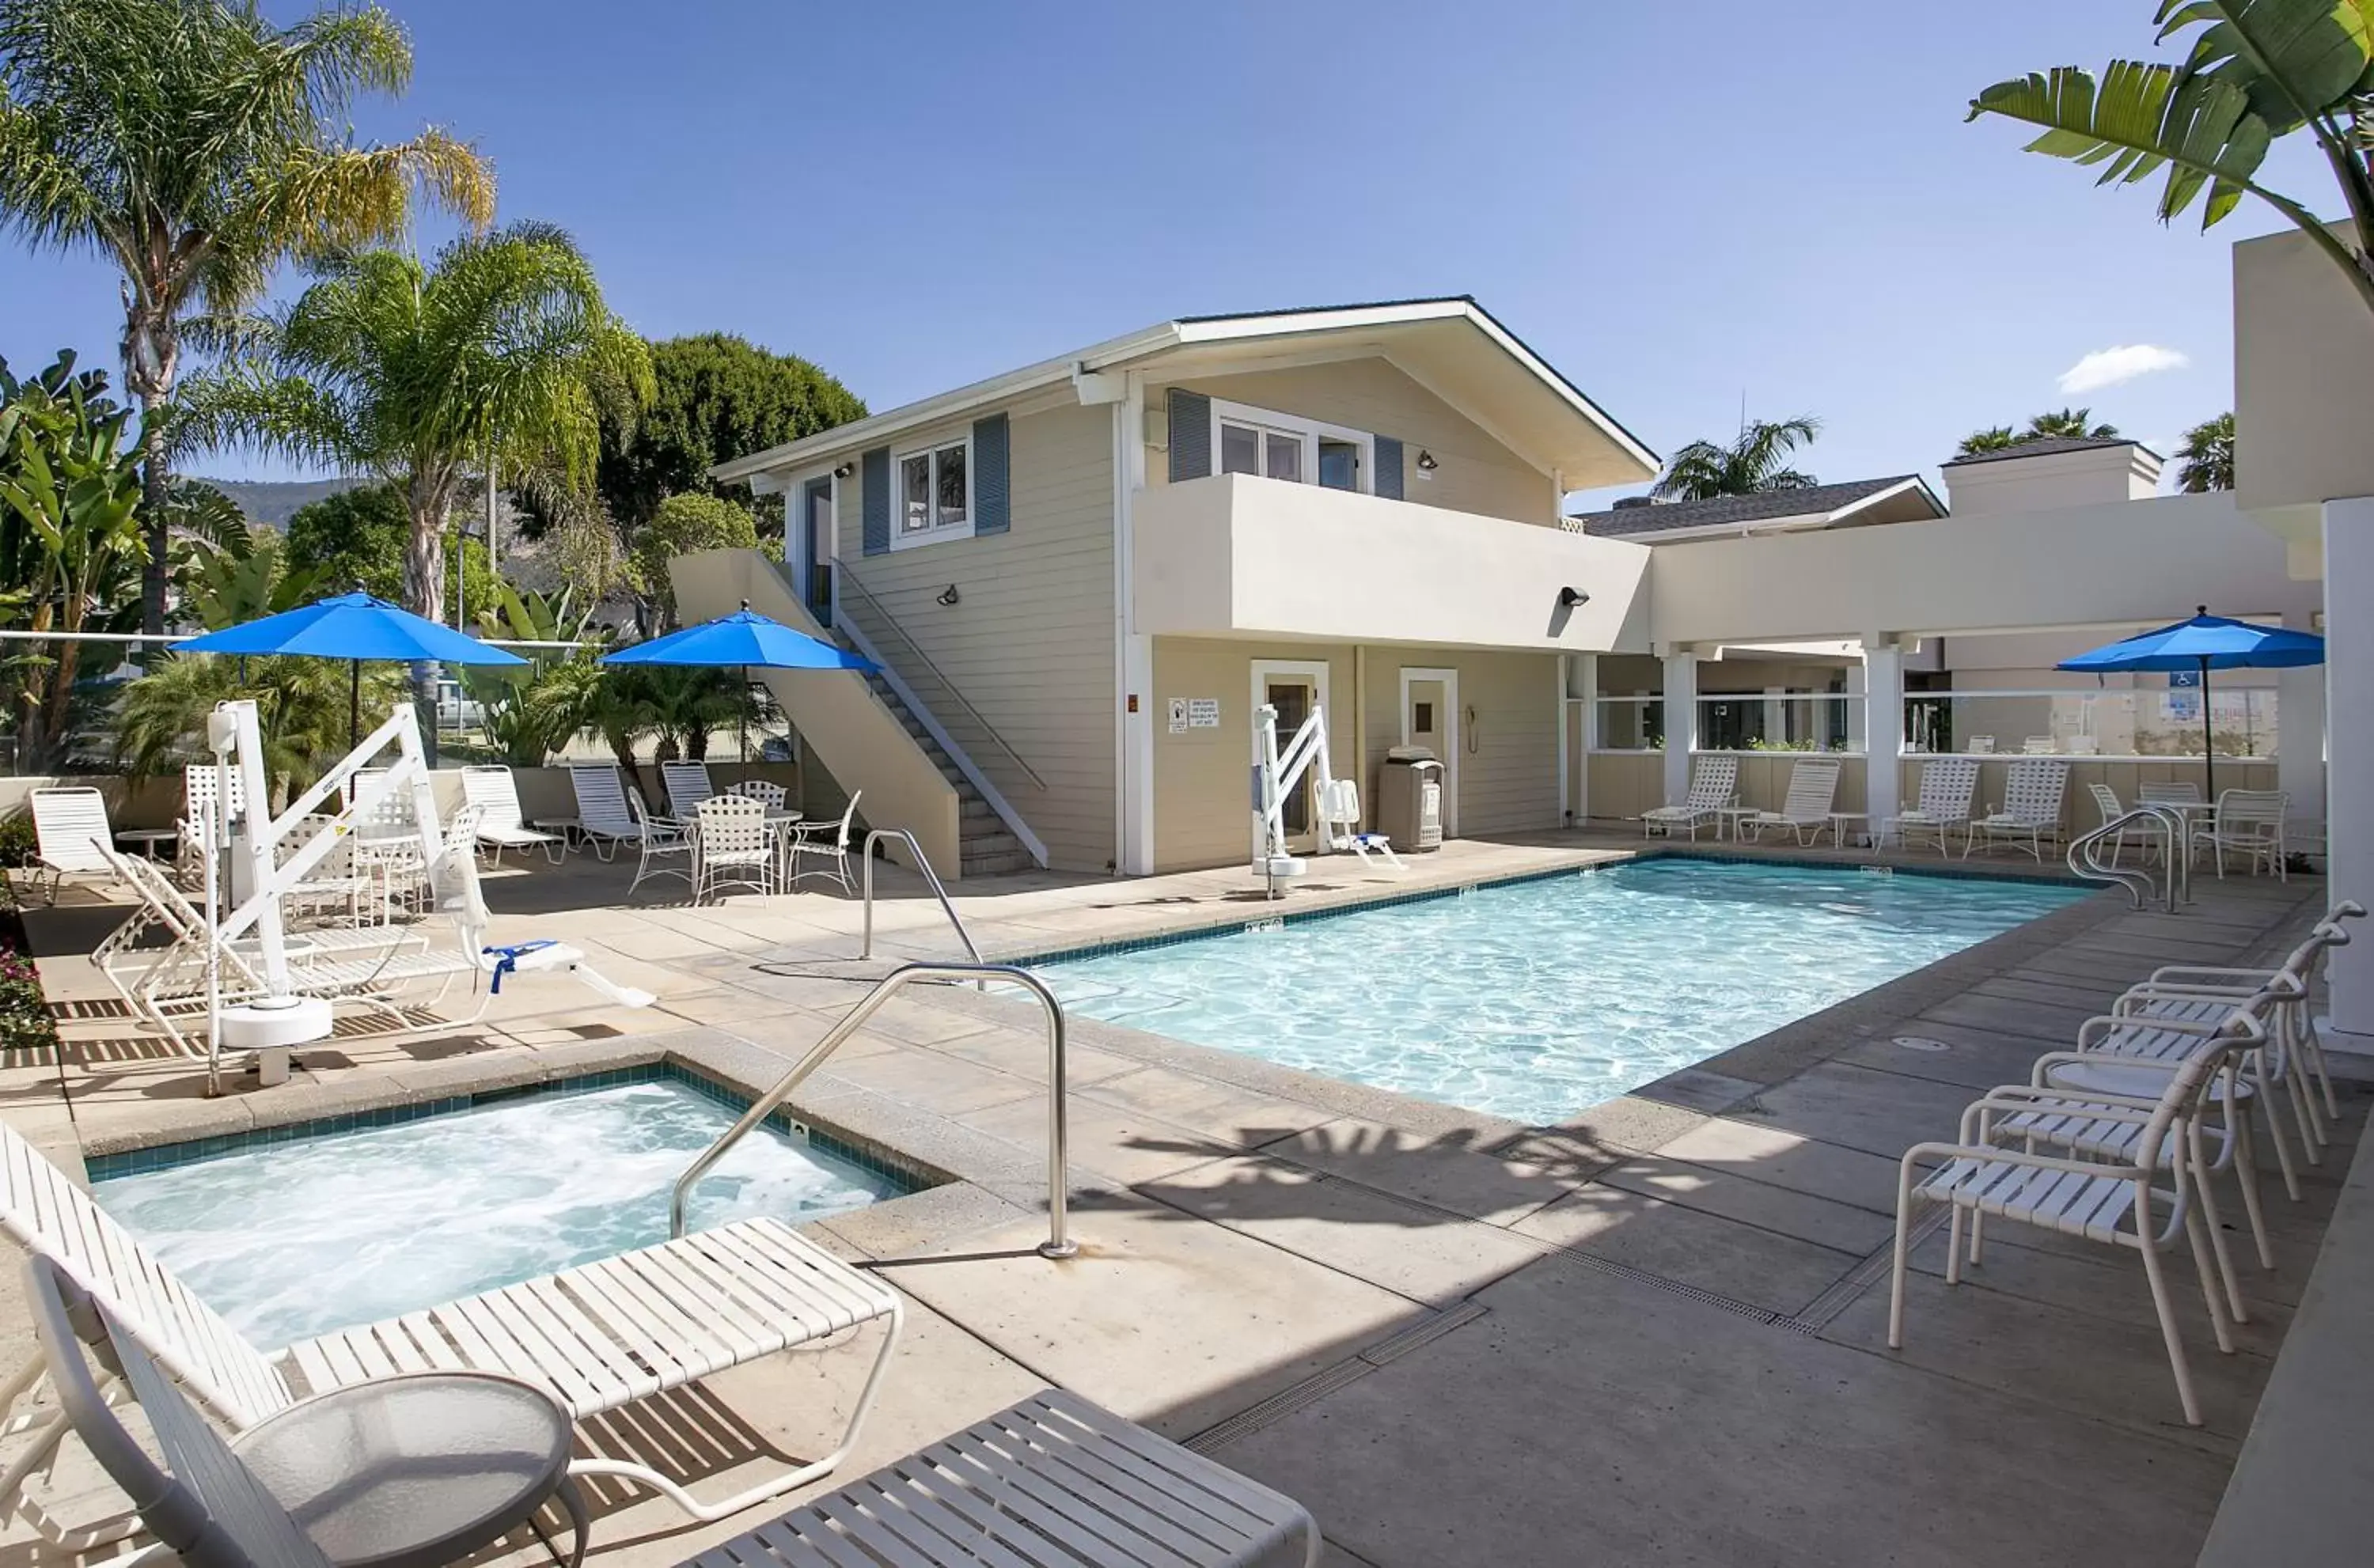 Property building, Swimming Pool in Sandpiper Lodge - Santa Barbara